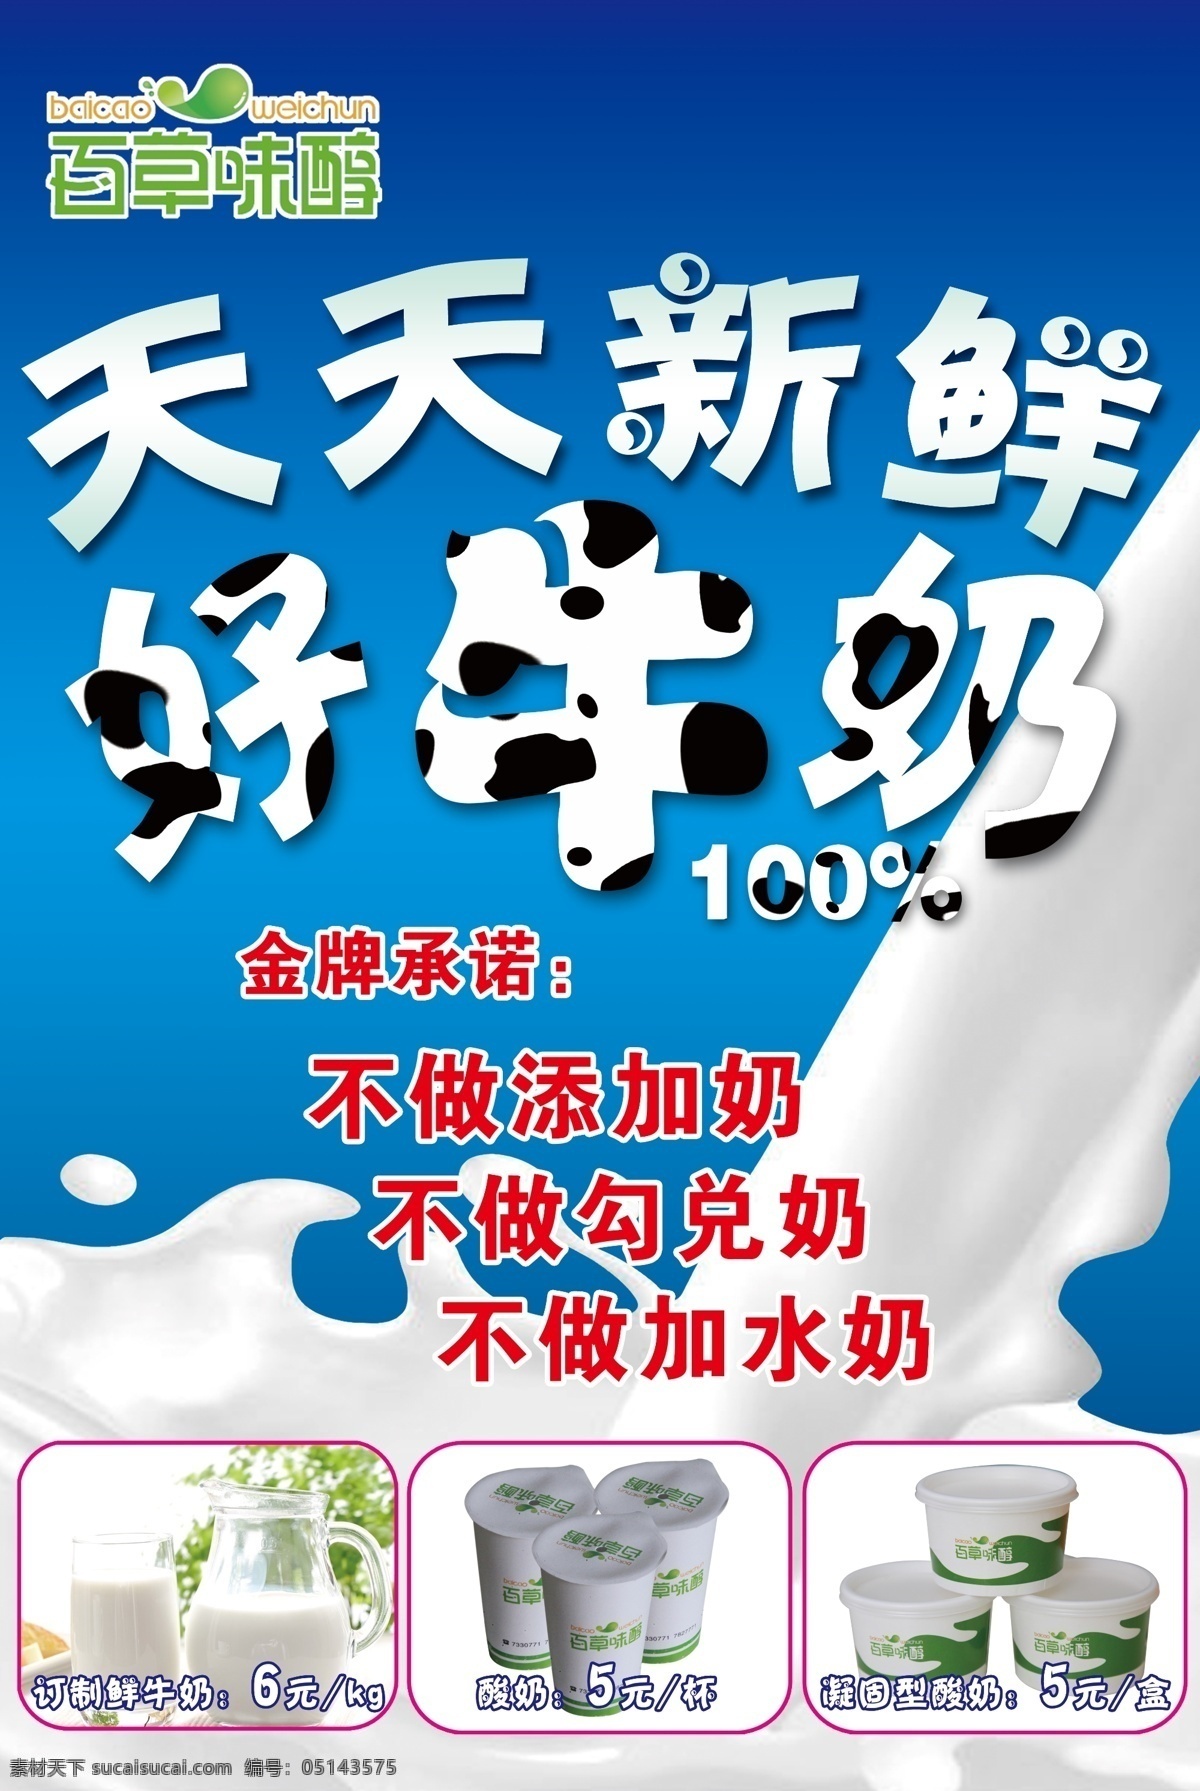 牛奶 宣传 展板 模板下载 牛奶宣传展板 新鲜牛奶 牛奶展板 牛奶传单 天天新鲜 展板模板 广告设计模板 源文件 白色